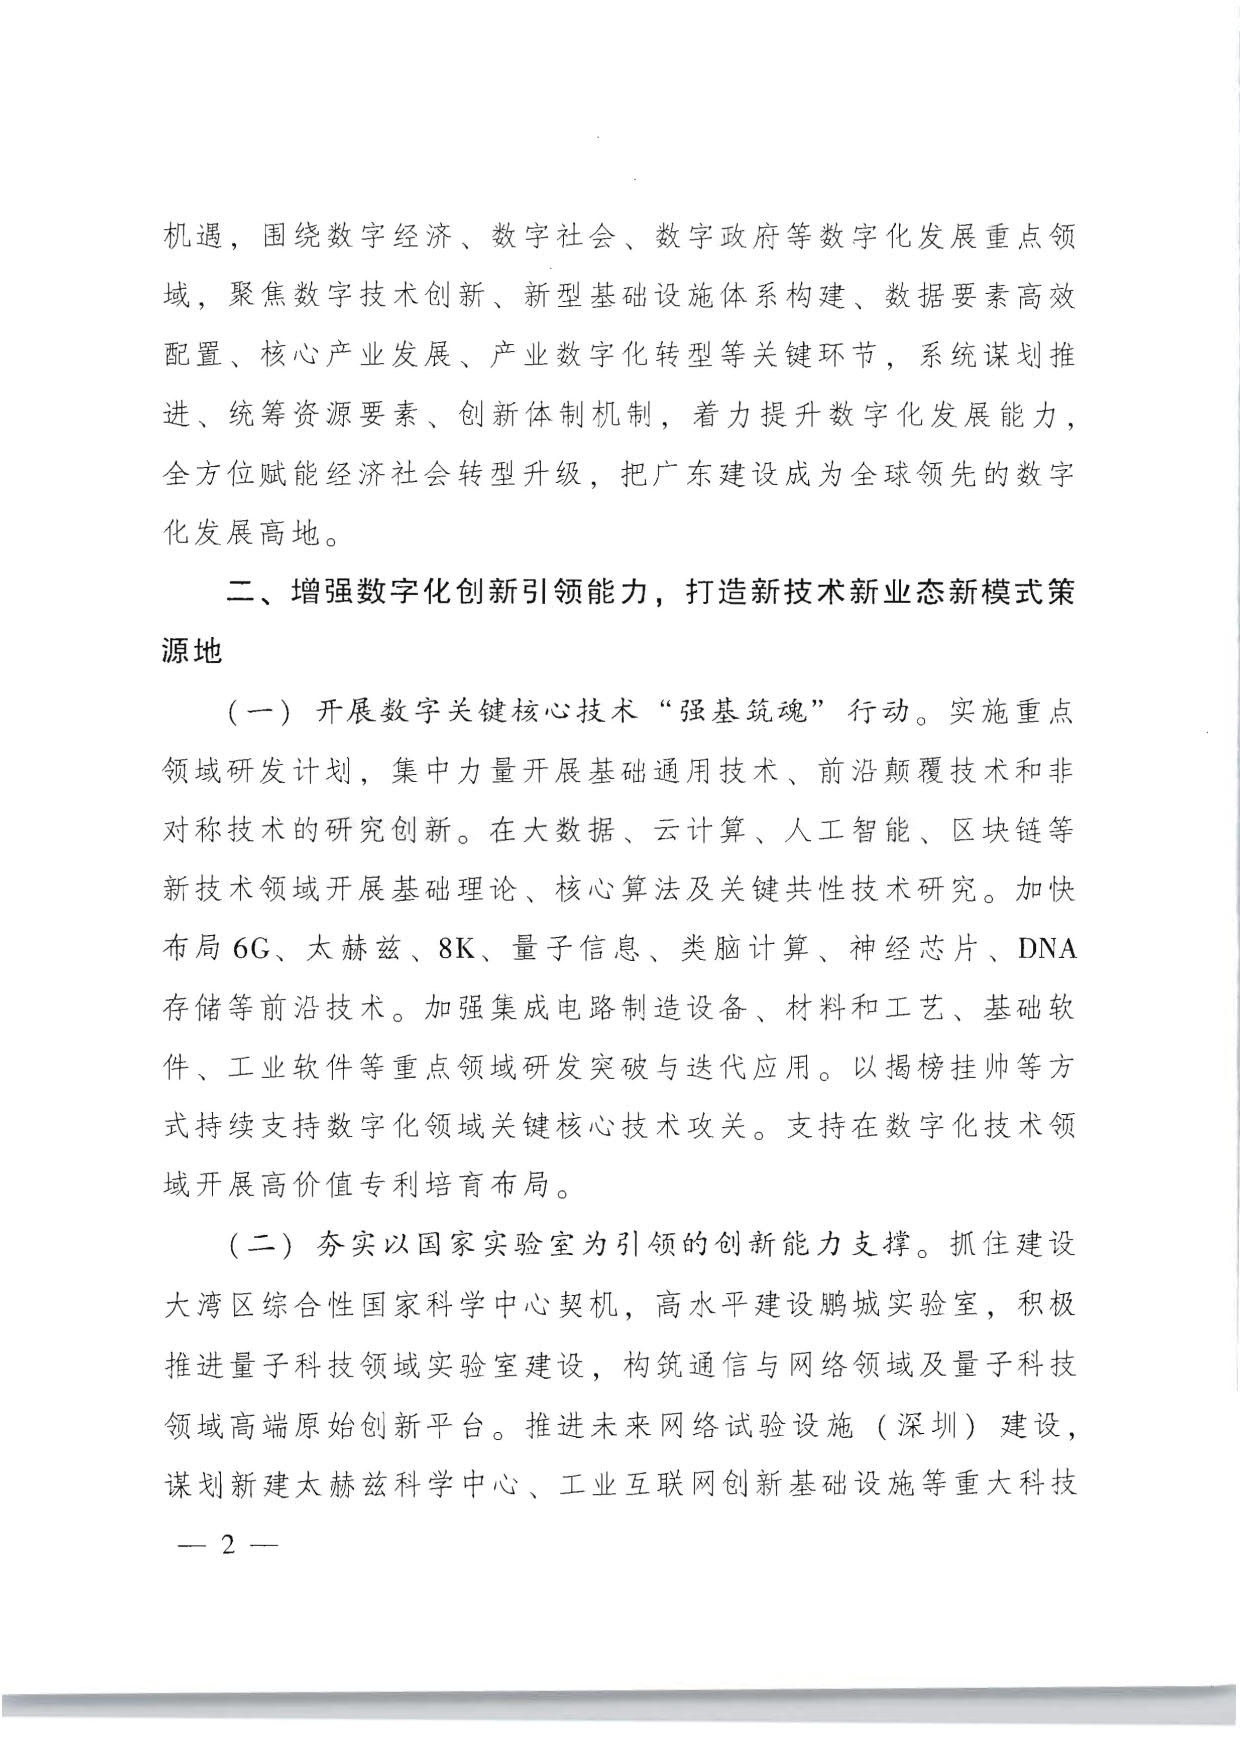 广东省人民政府关于加快数字化发展的意见_02.jpg